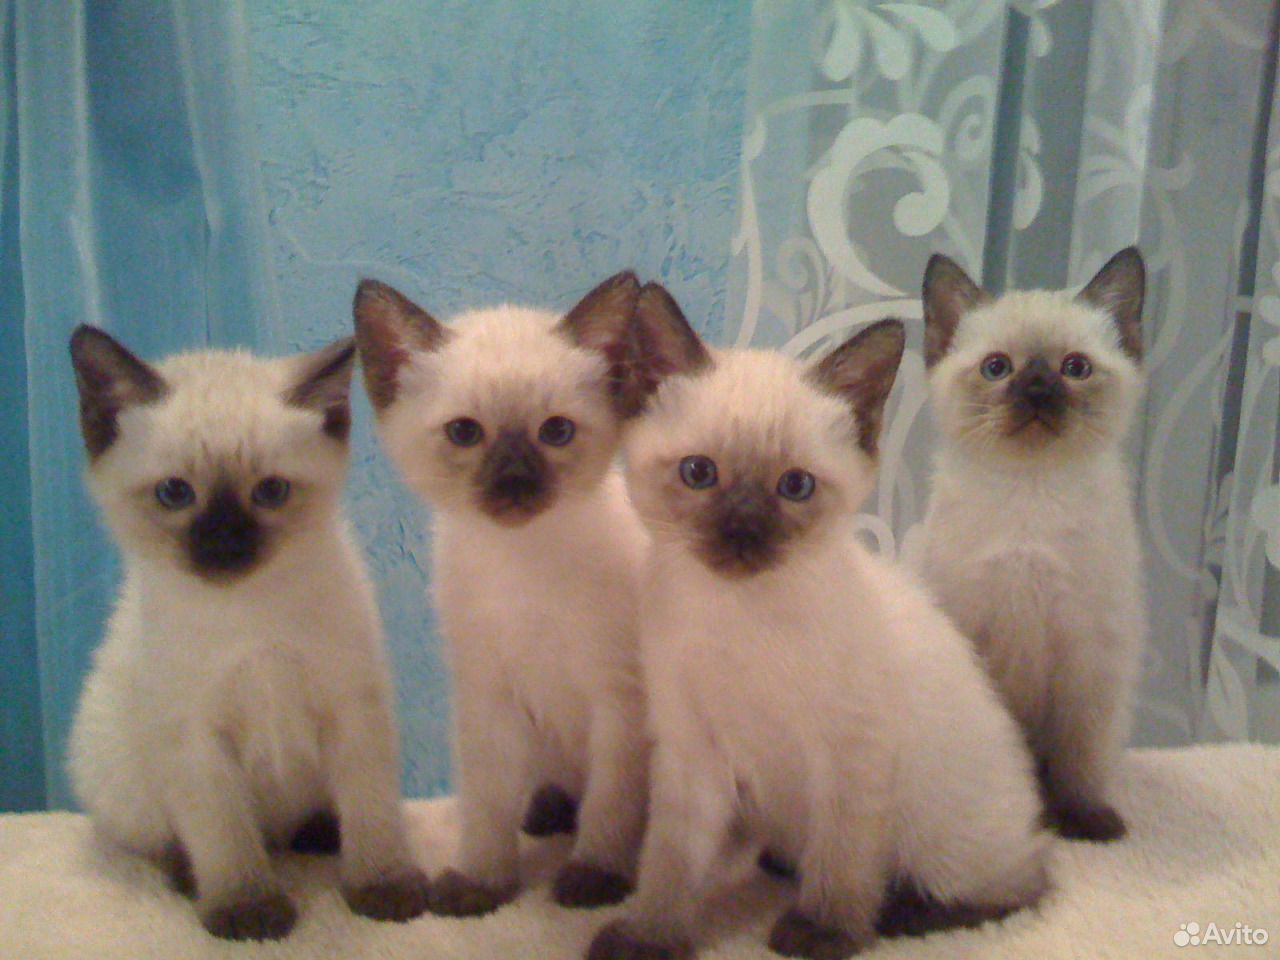 Авито породы кошек. Сиамские тайские котята. Сиамская кошка чистокровная и тайская. Чистокровные тайские котятами. Московская Сиамская.